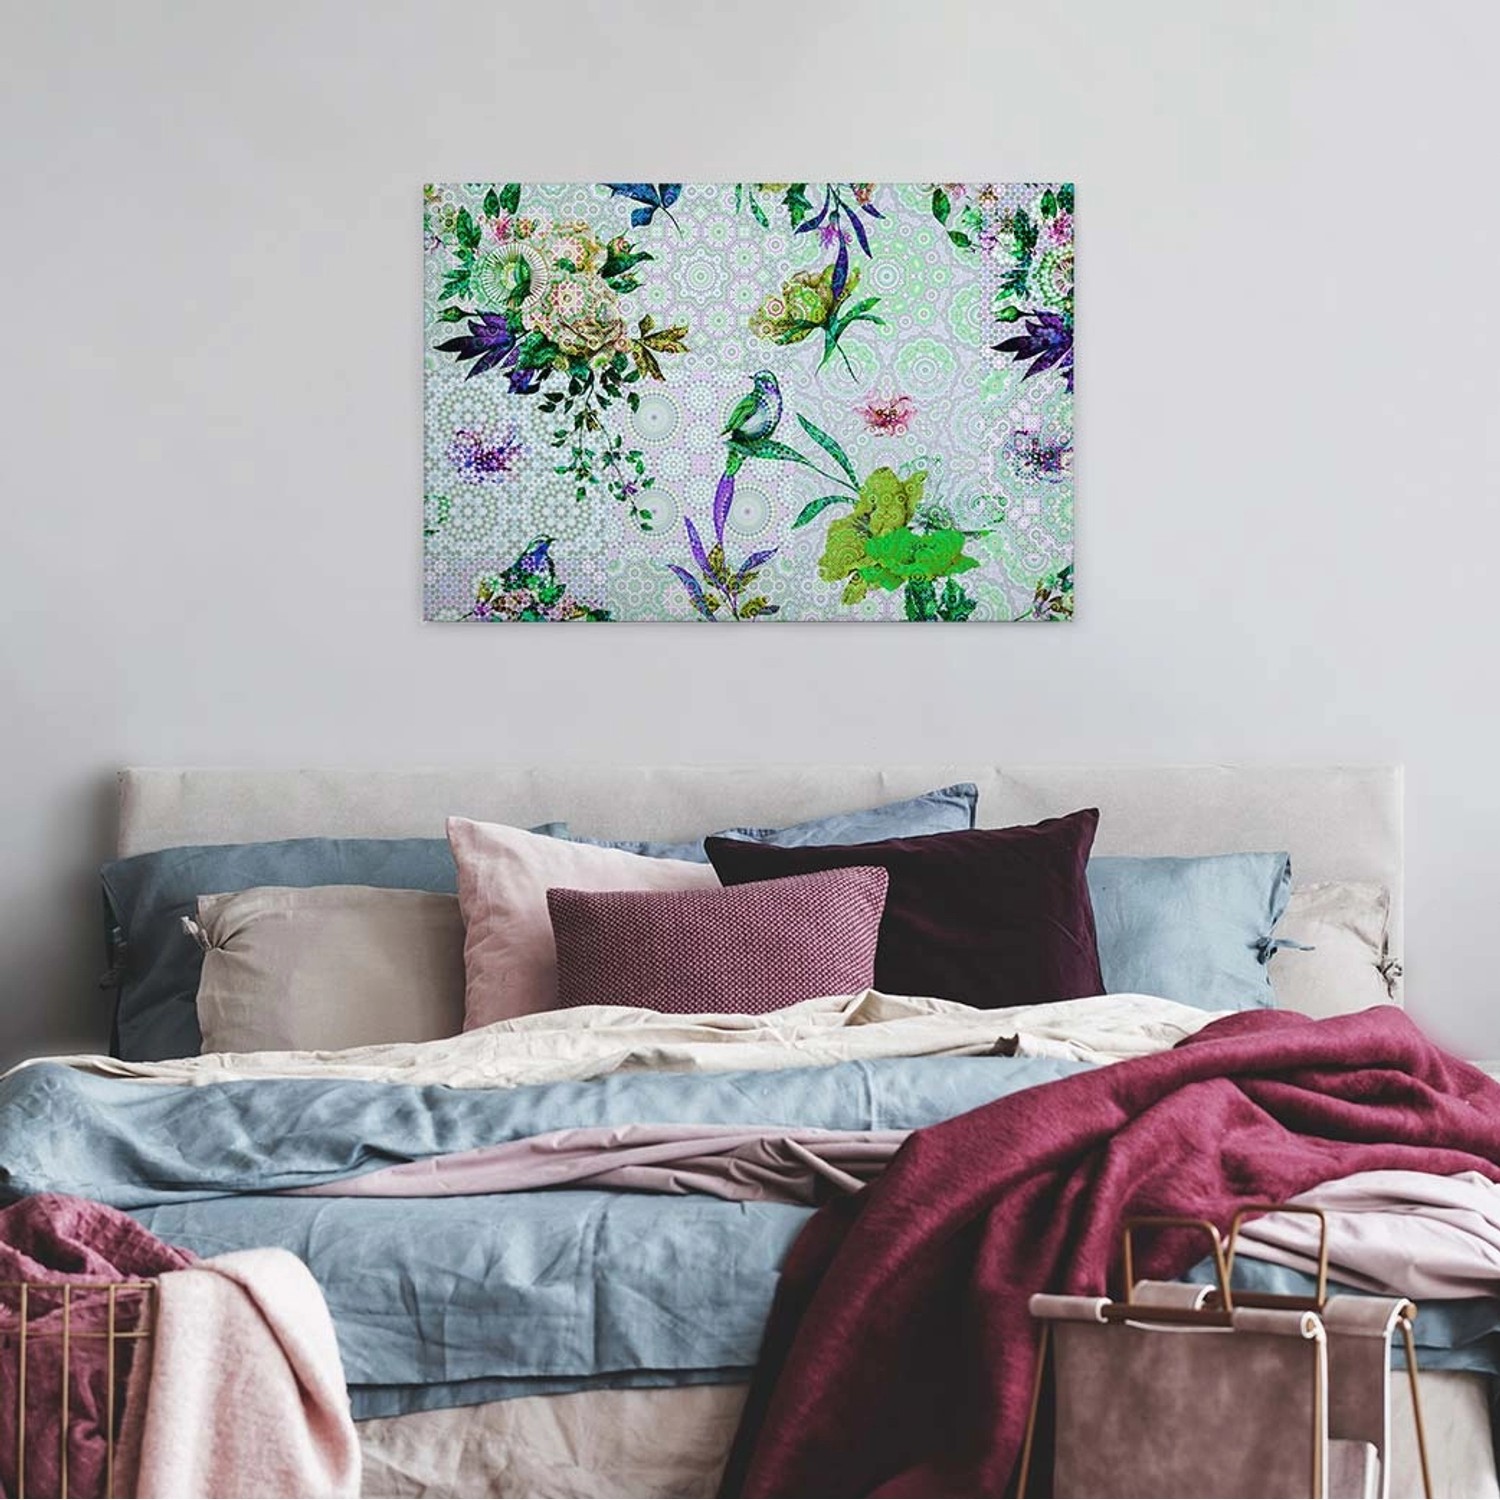 Bricoflor Mosaik Bild Auf Leinwand Ausgefallenes Wandbild Mit Vögeln Und Blumen Grünes Leinwandbild Mit Grafik Design Id